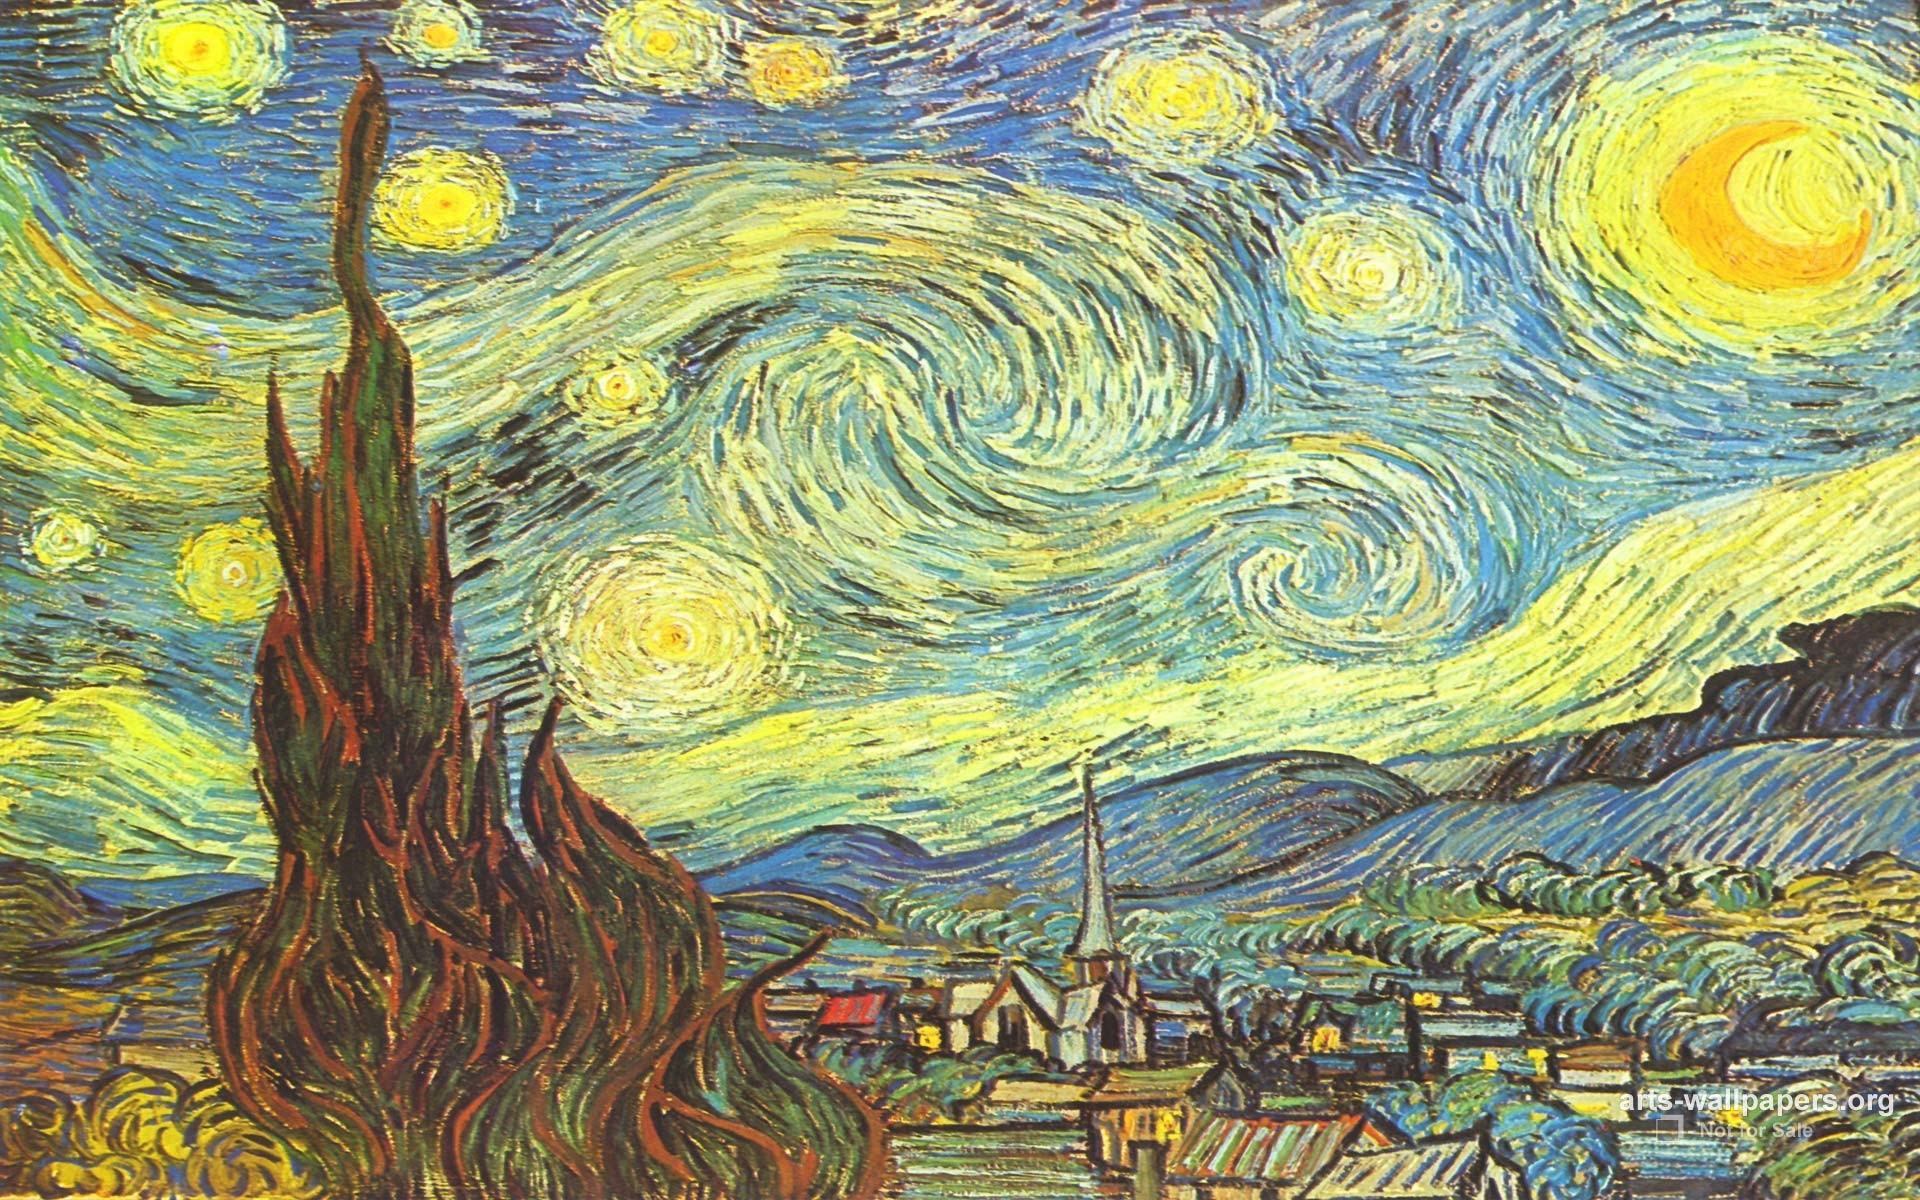 Hình nền Văn Gogh thật tuyệt vời! Hãy ngắm nhìn thiên nhiên hoang sơ và những nét vẽ tuyệt đẹp của họa sĩ vĩ đại này trên màn hình điện thoại của bạn với hình nền Văn Gogh. Đừng bỏ lỡ cơ hội để đem tinh hoa nghệ thuật vào cuộc sống của bạn!